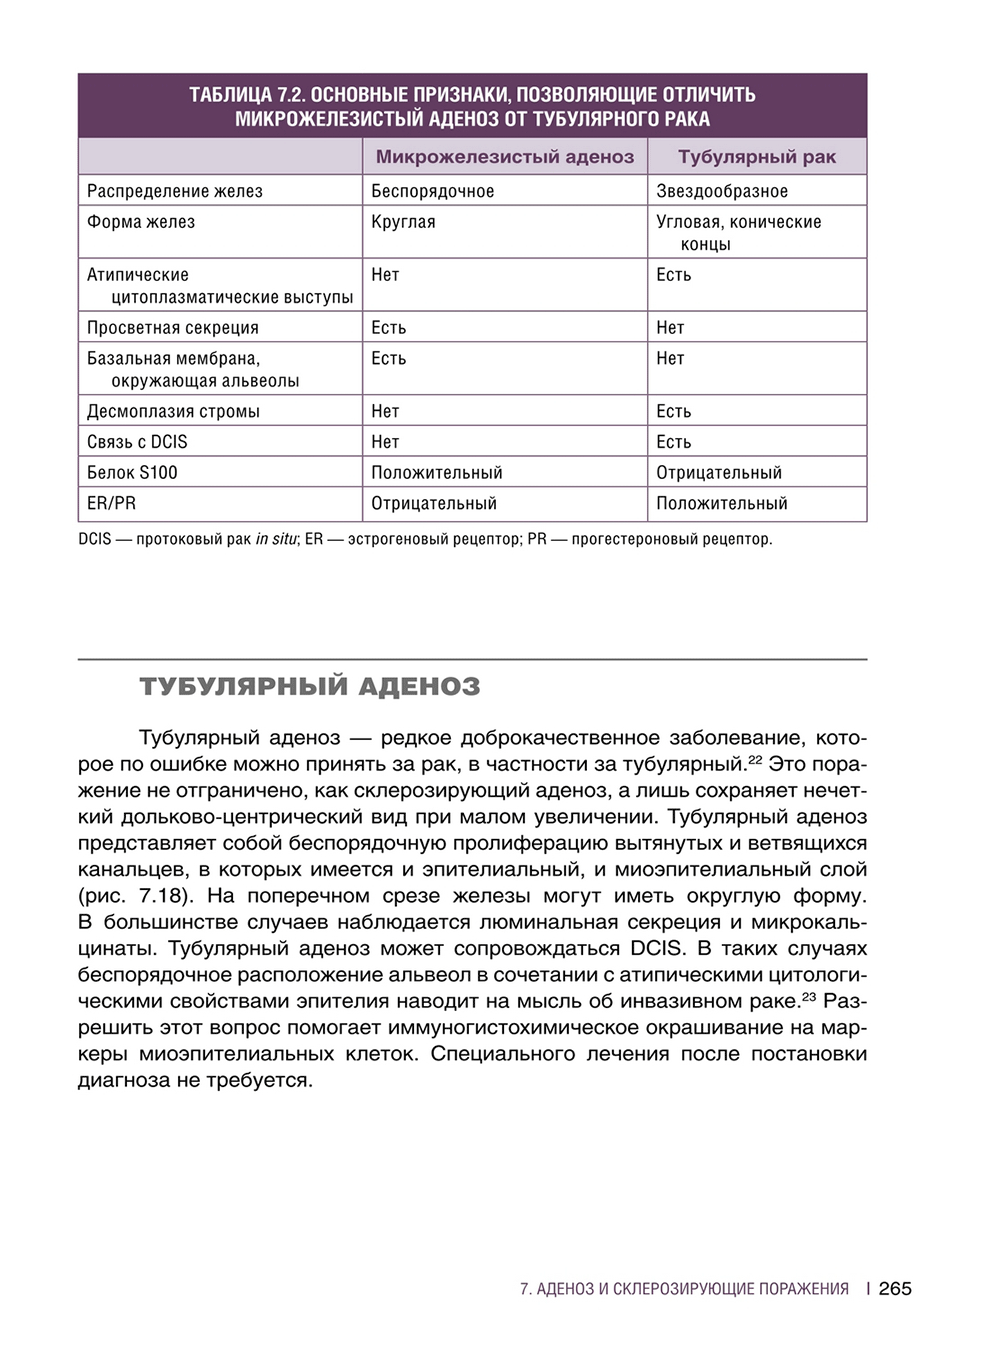 Таблица 7.2. Основные признаки, позволяющие отличить микрожелезистый аденоз от тубулярного рака